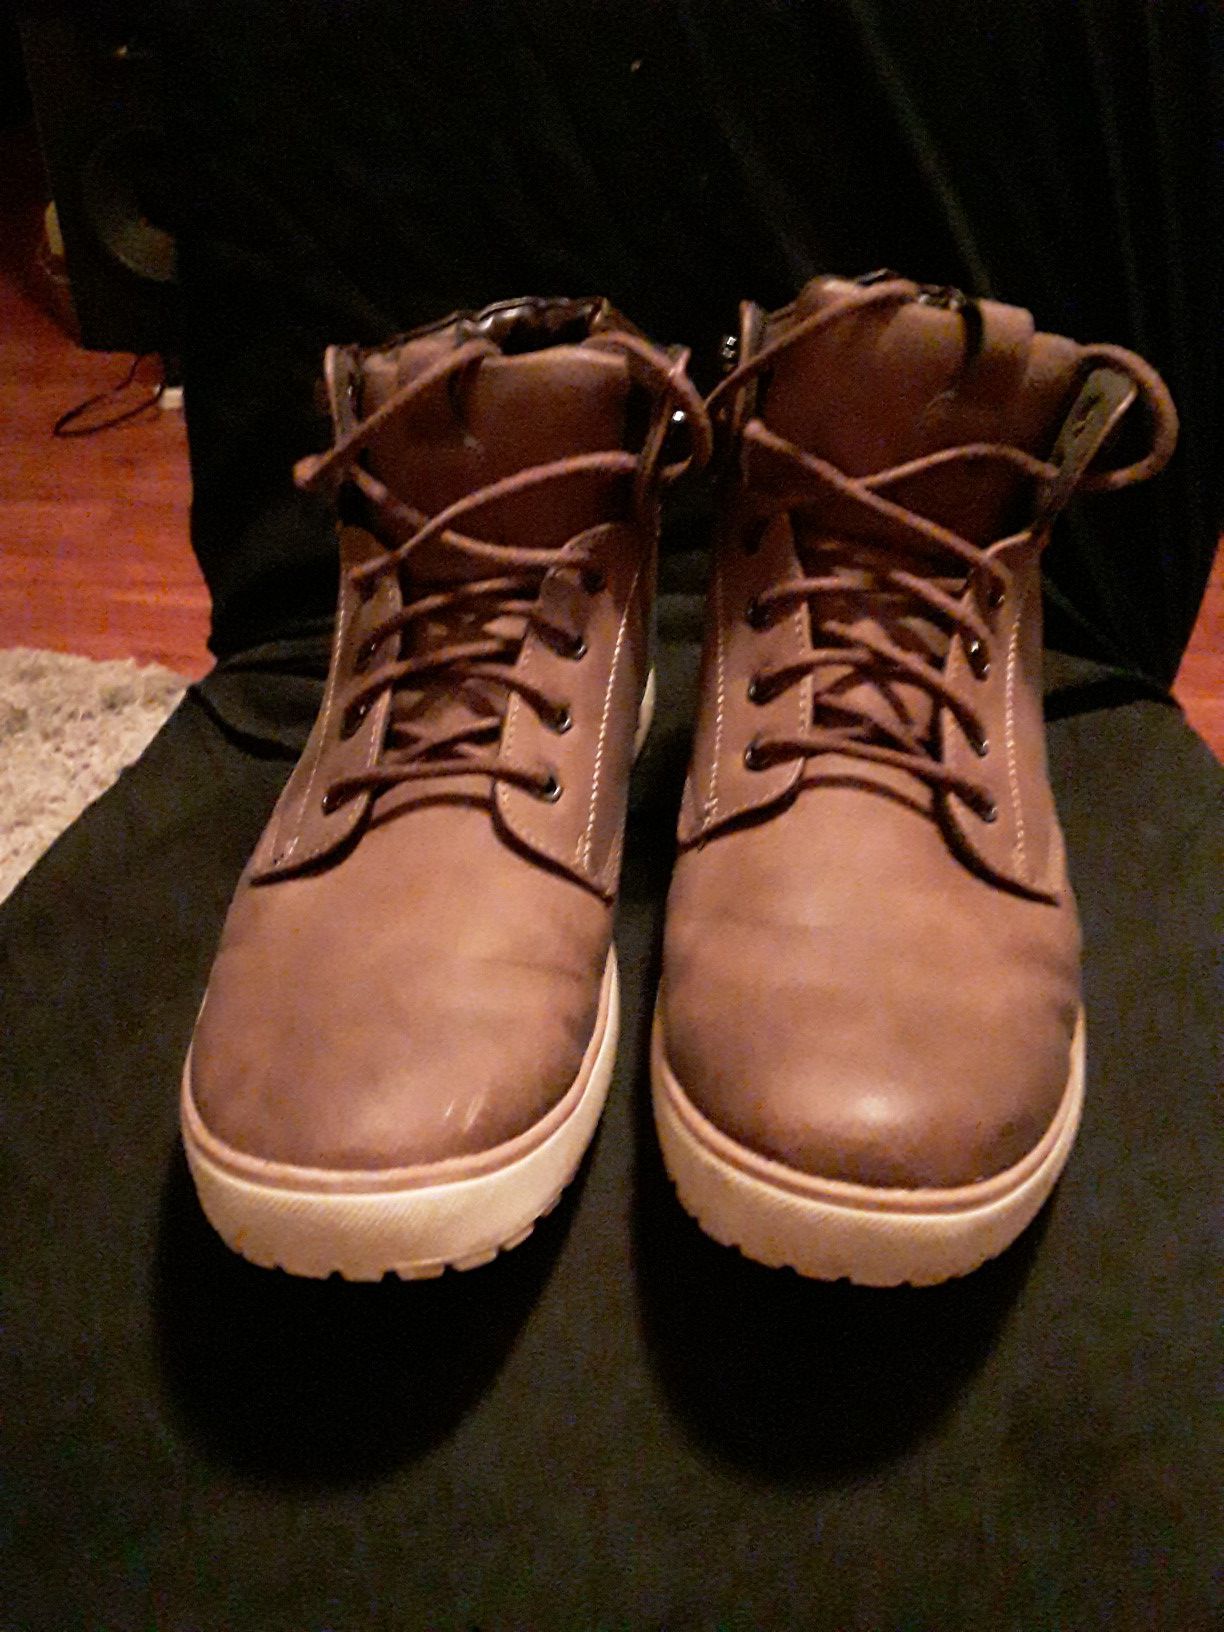 Men's brown boots